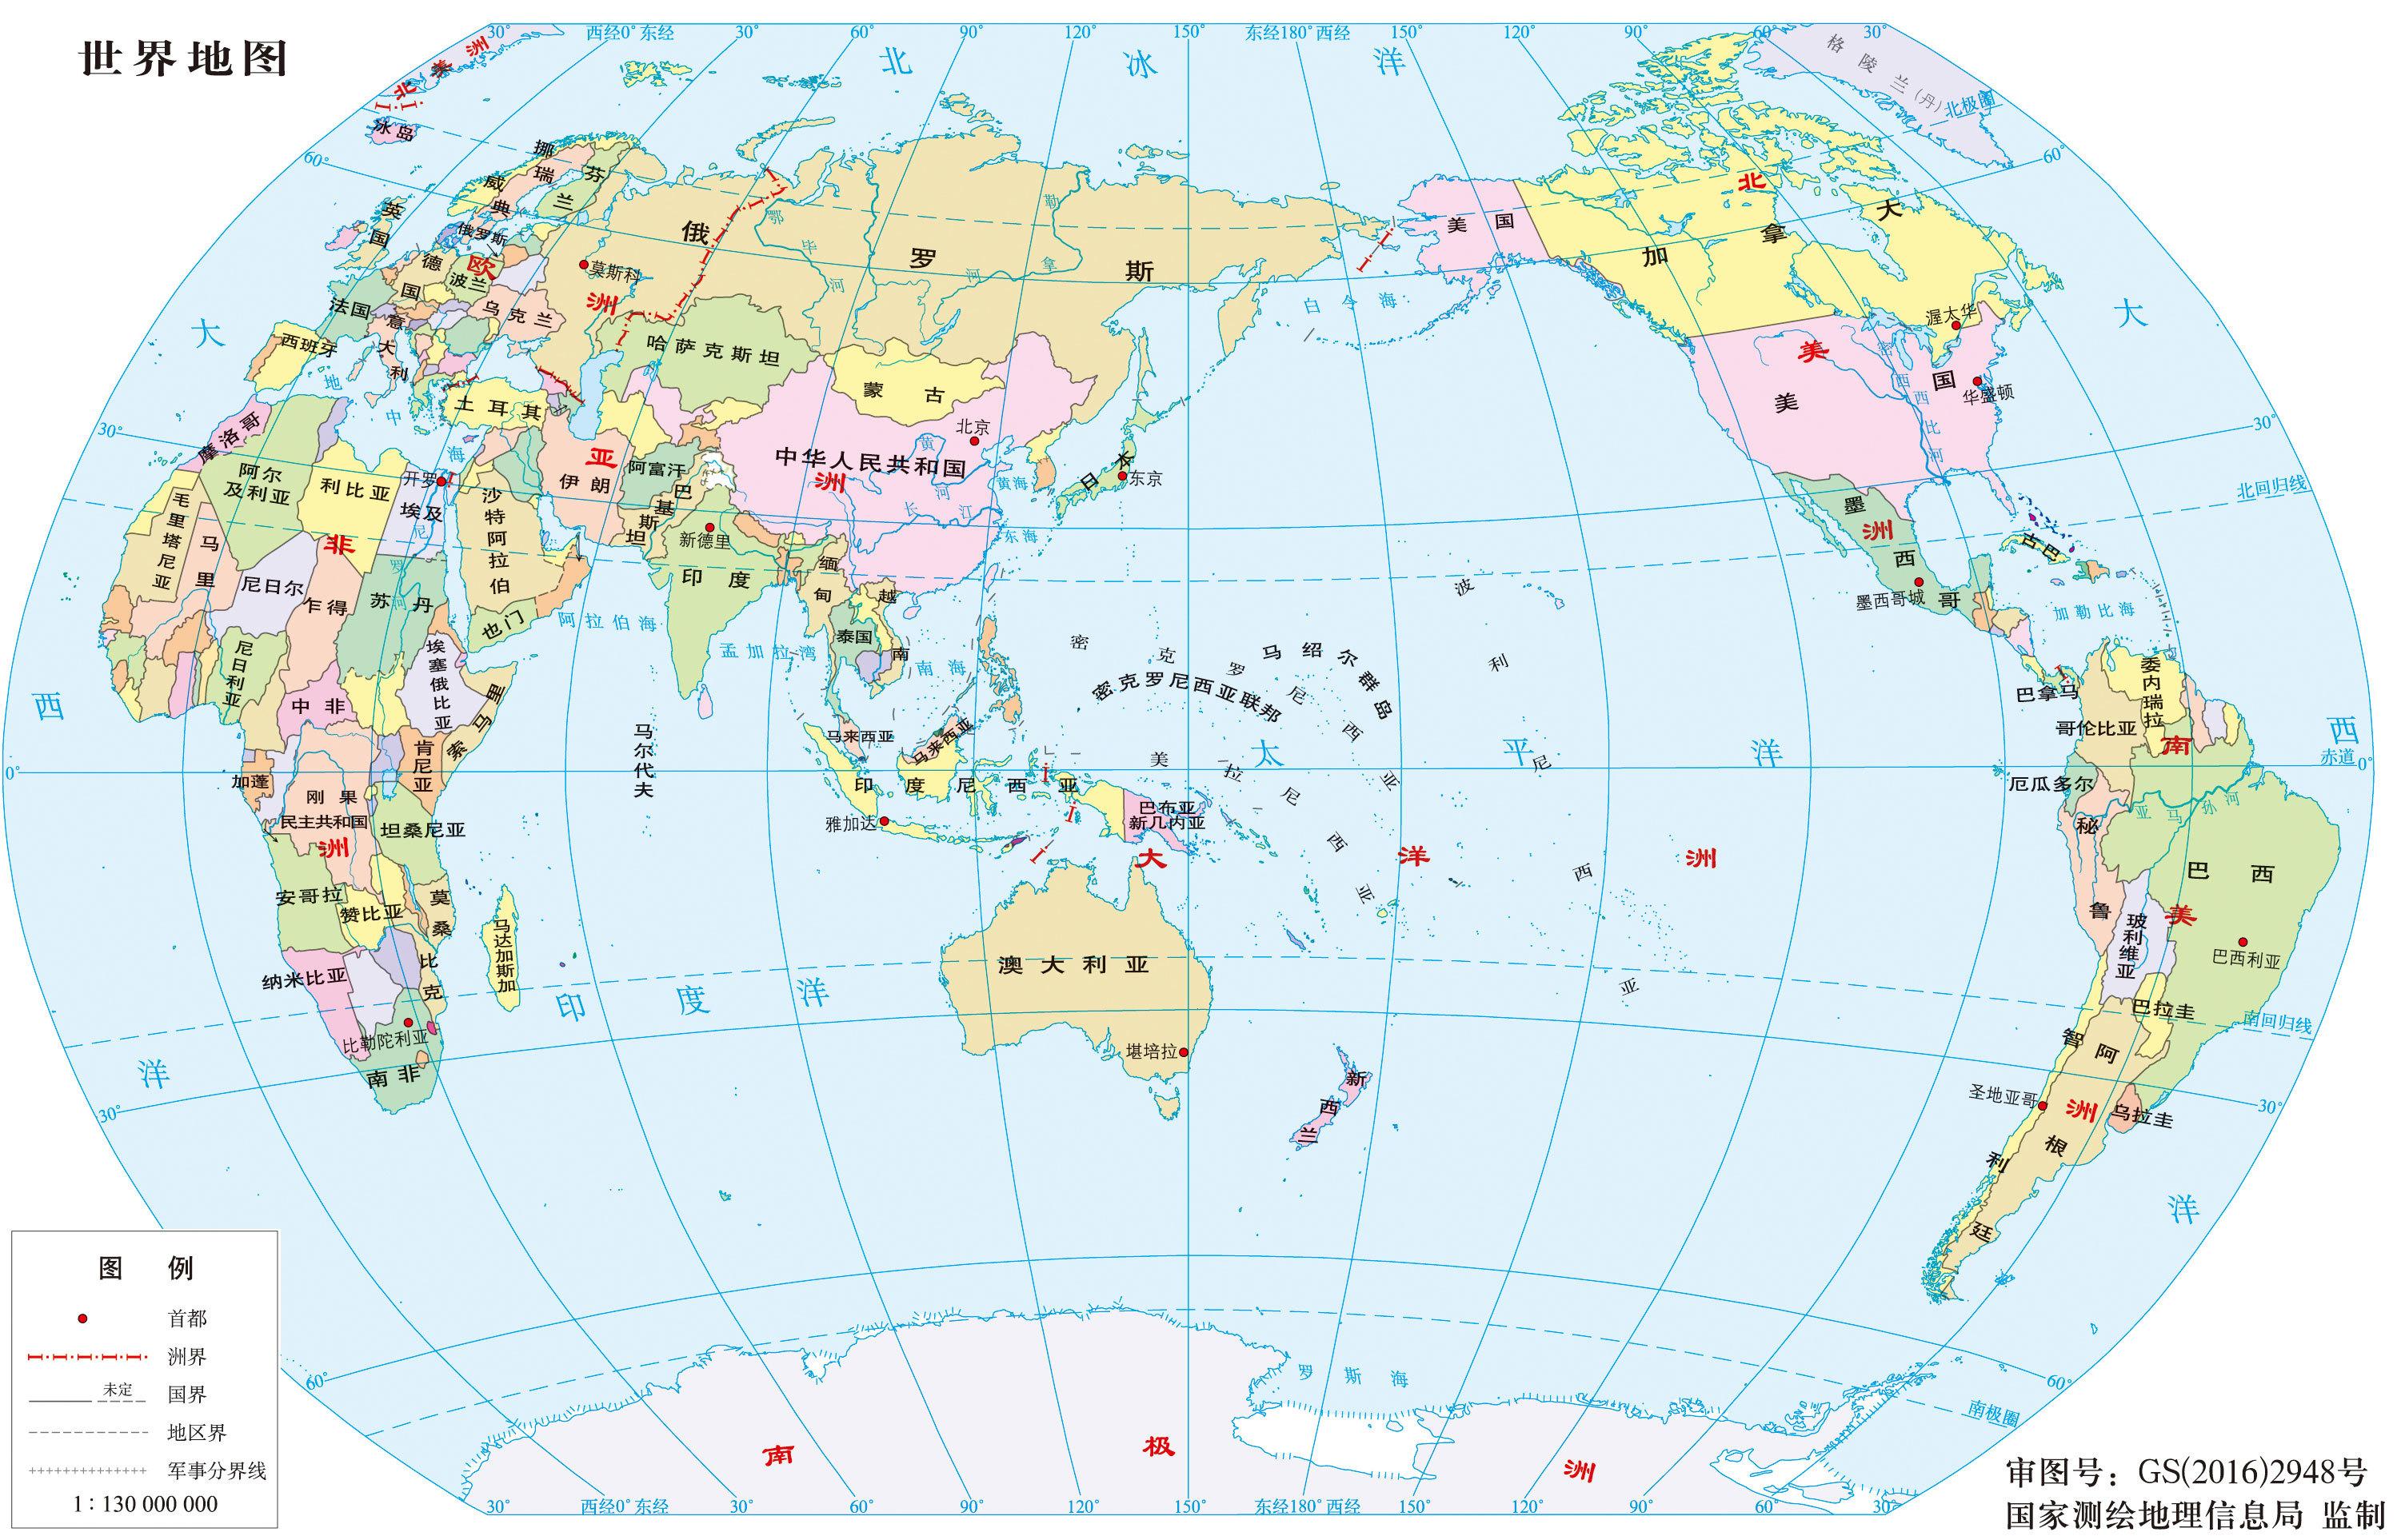 大洋洲地形简图 - 世界地理地图 - 地理教师网